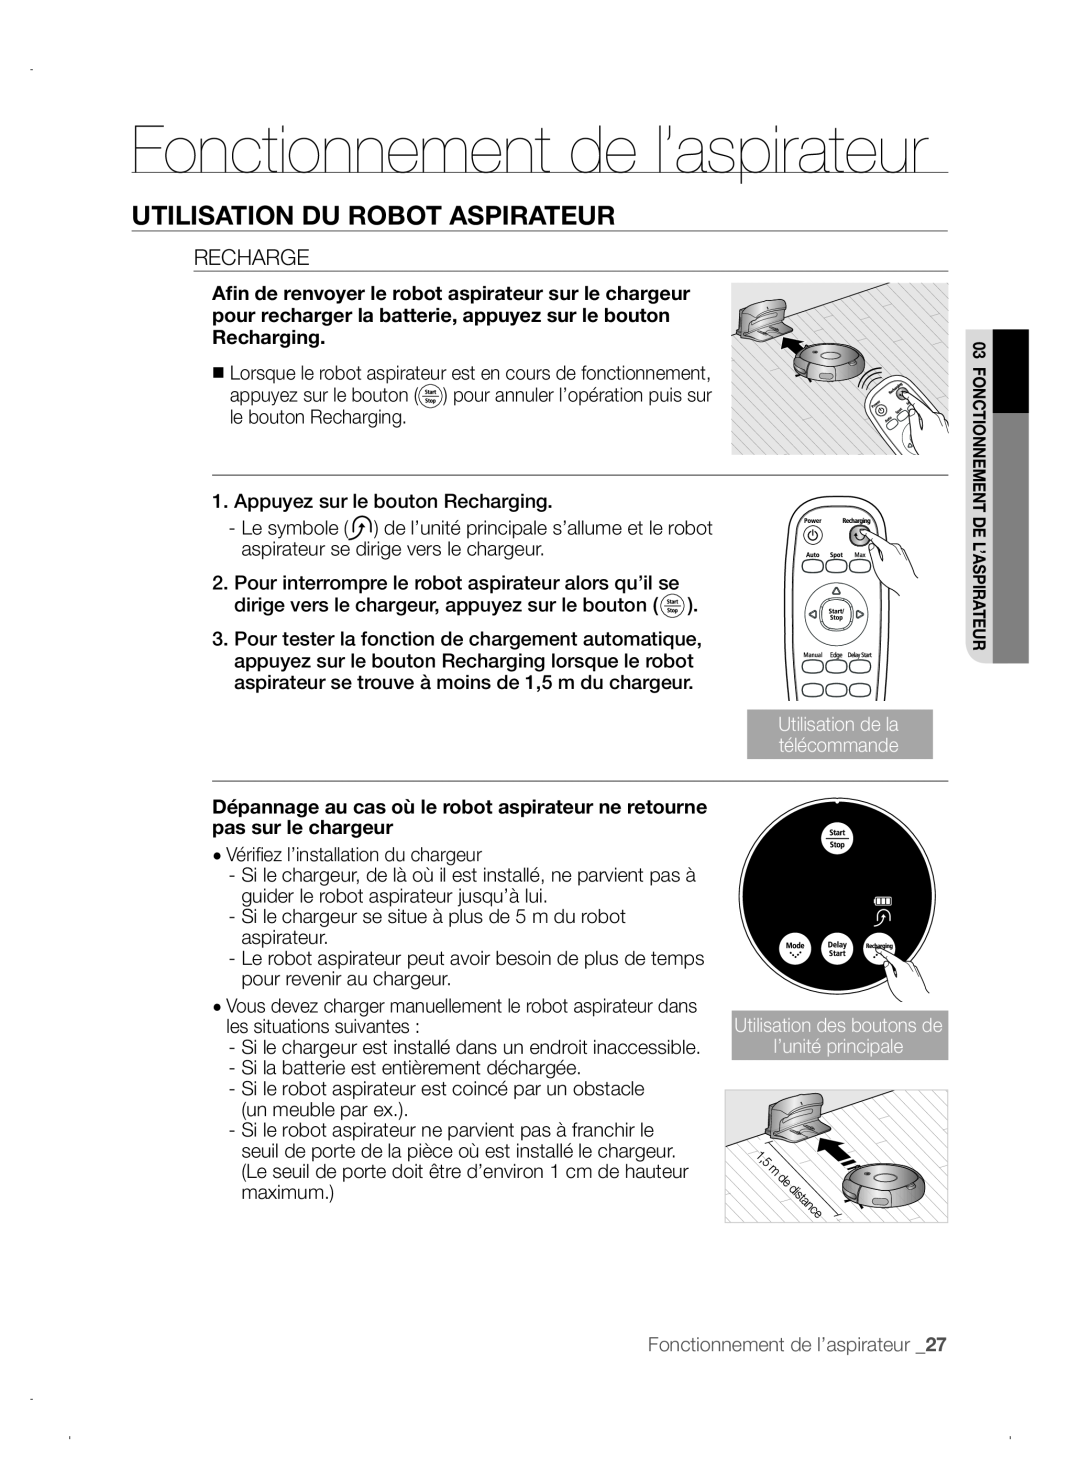 Samsung VCR8845T3A/XEO, VCR8845T3A/XET manual Fonctionnement de l’aspirateur, Utilisation Du Robot Aspirateur, Recharge 